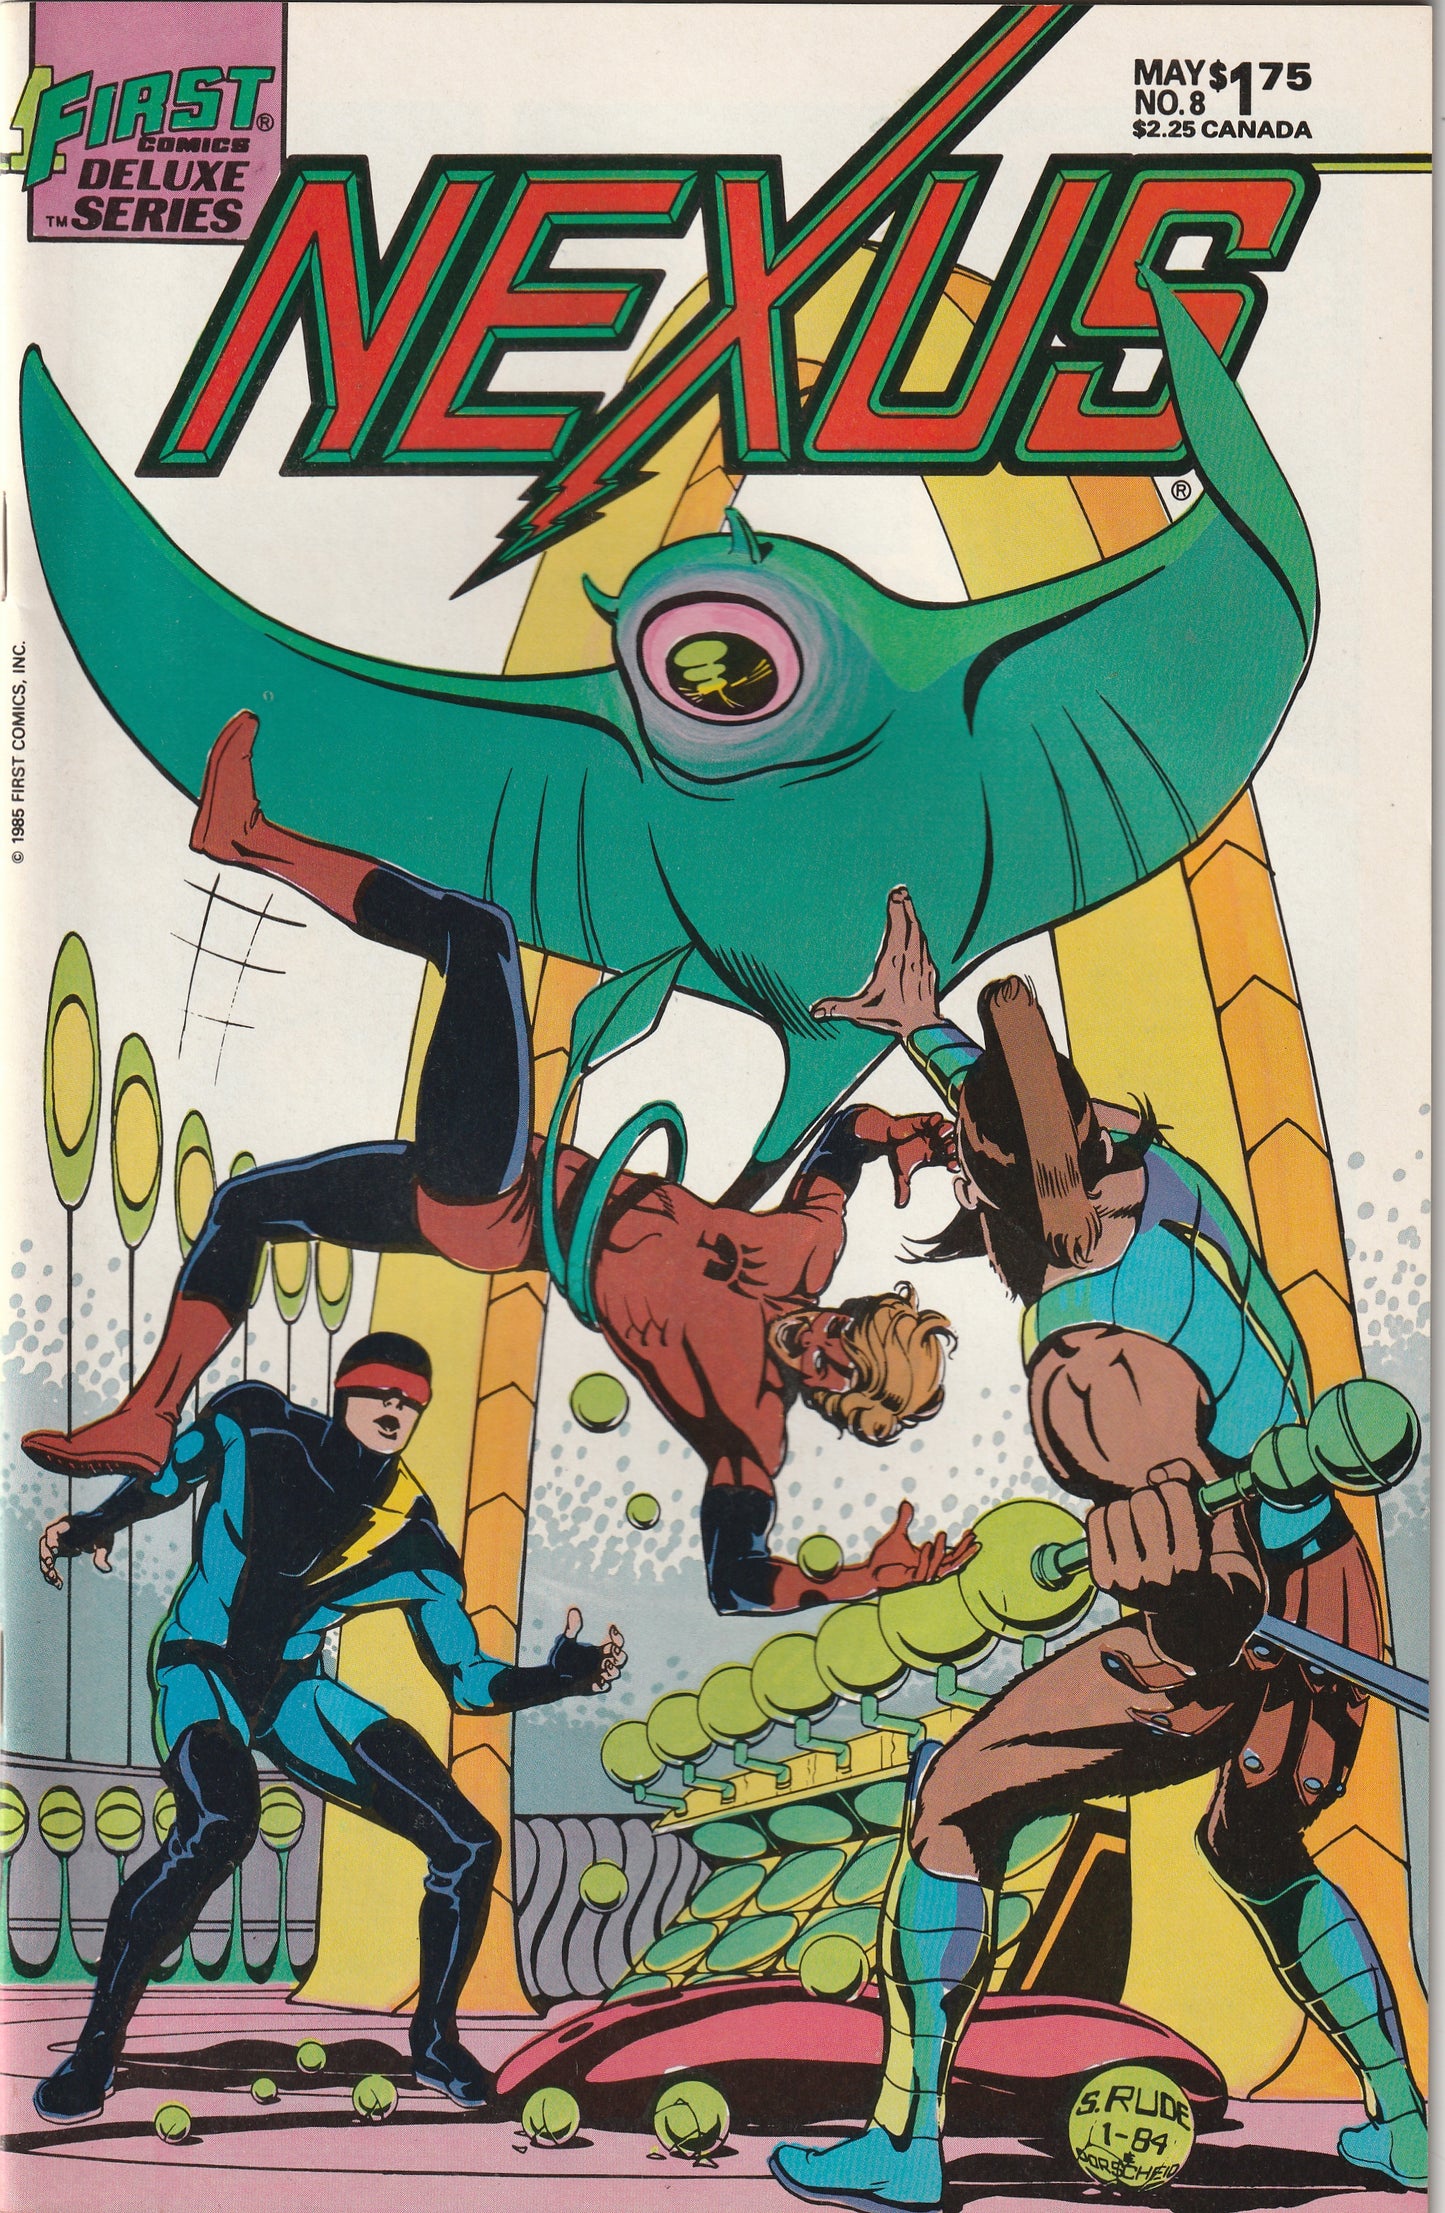 NEXUS #8 (Vol 2, 1985)